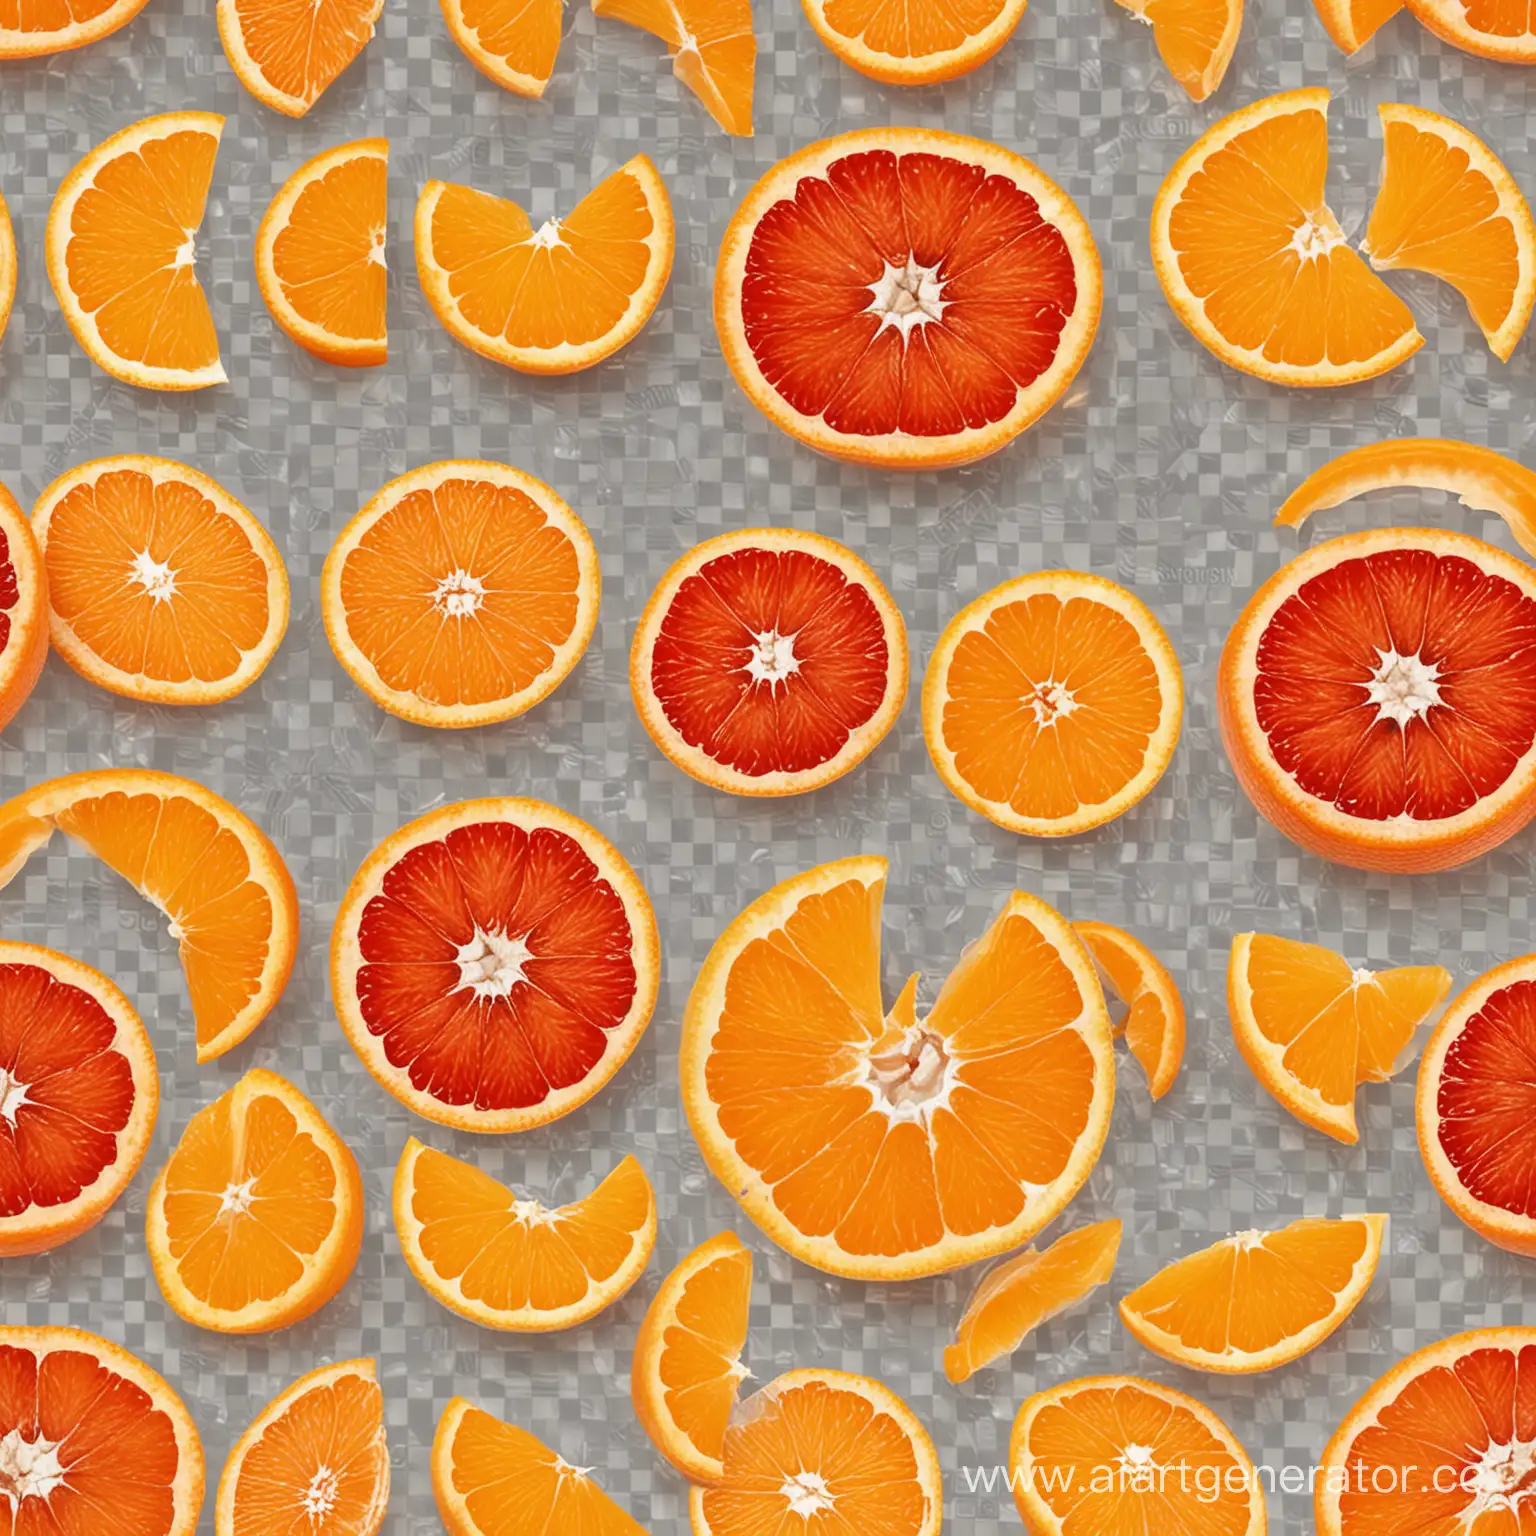 красный апельсин и мандарин в разрезе на прозрачном фоне